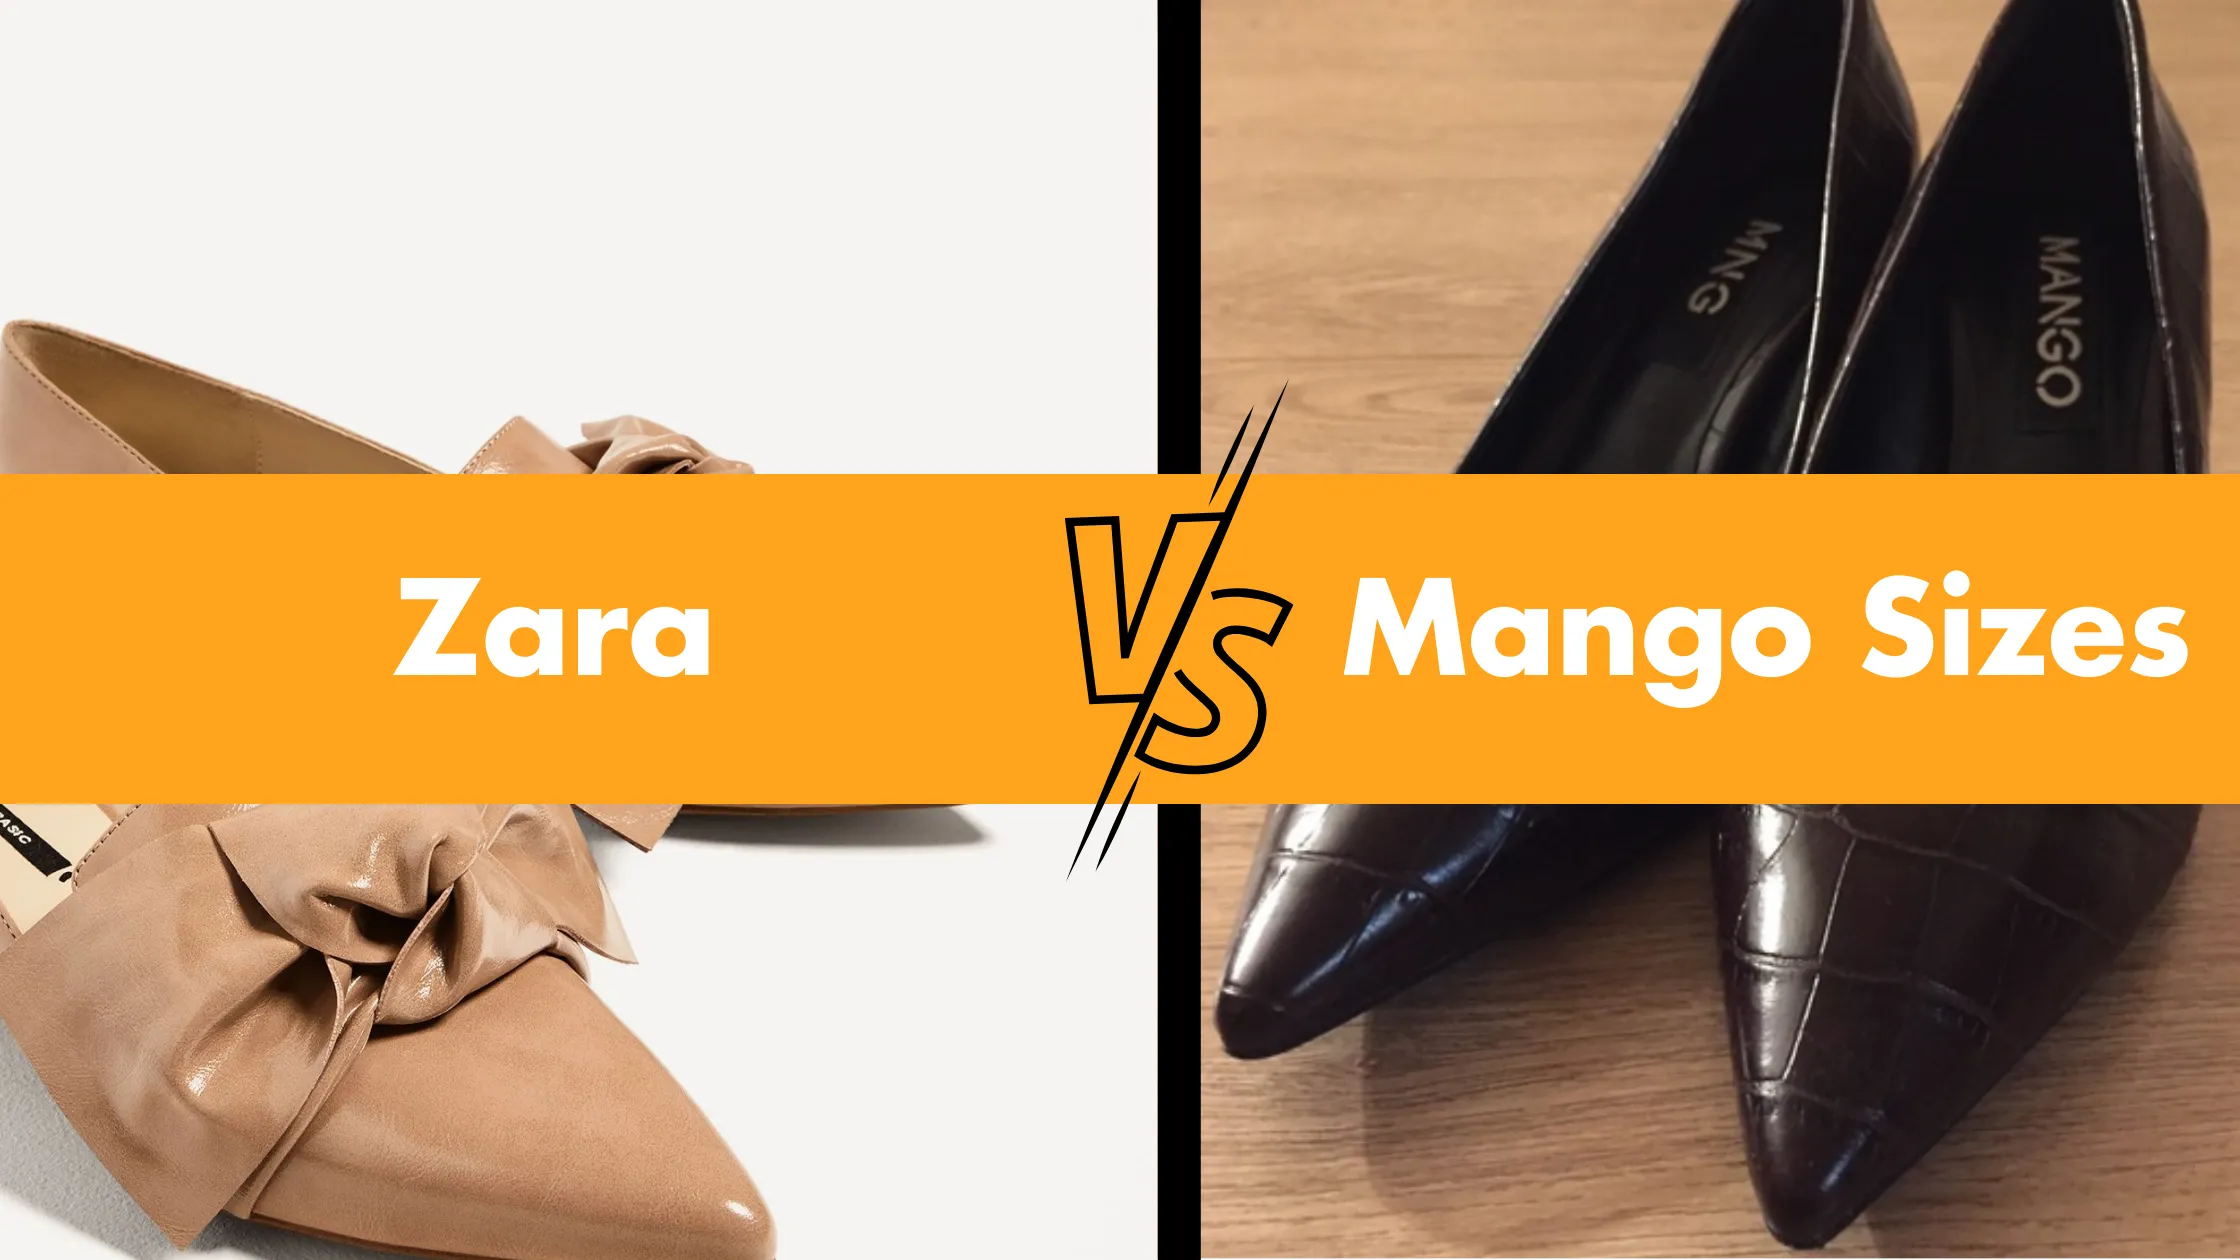 Zara VS Mango Sizes